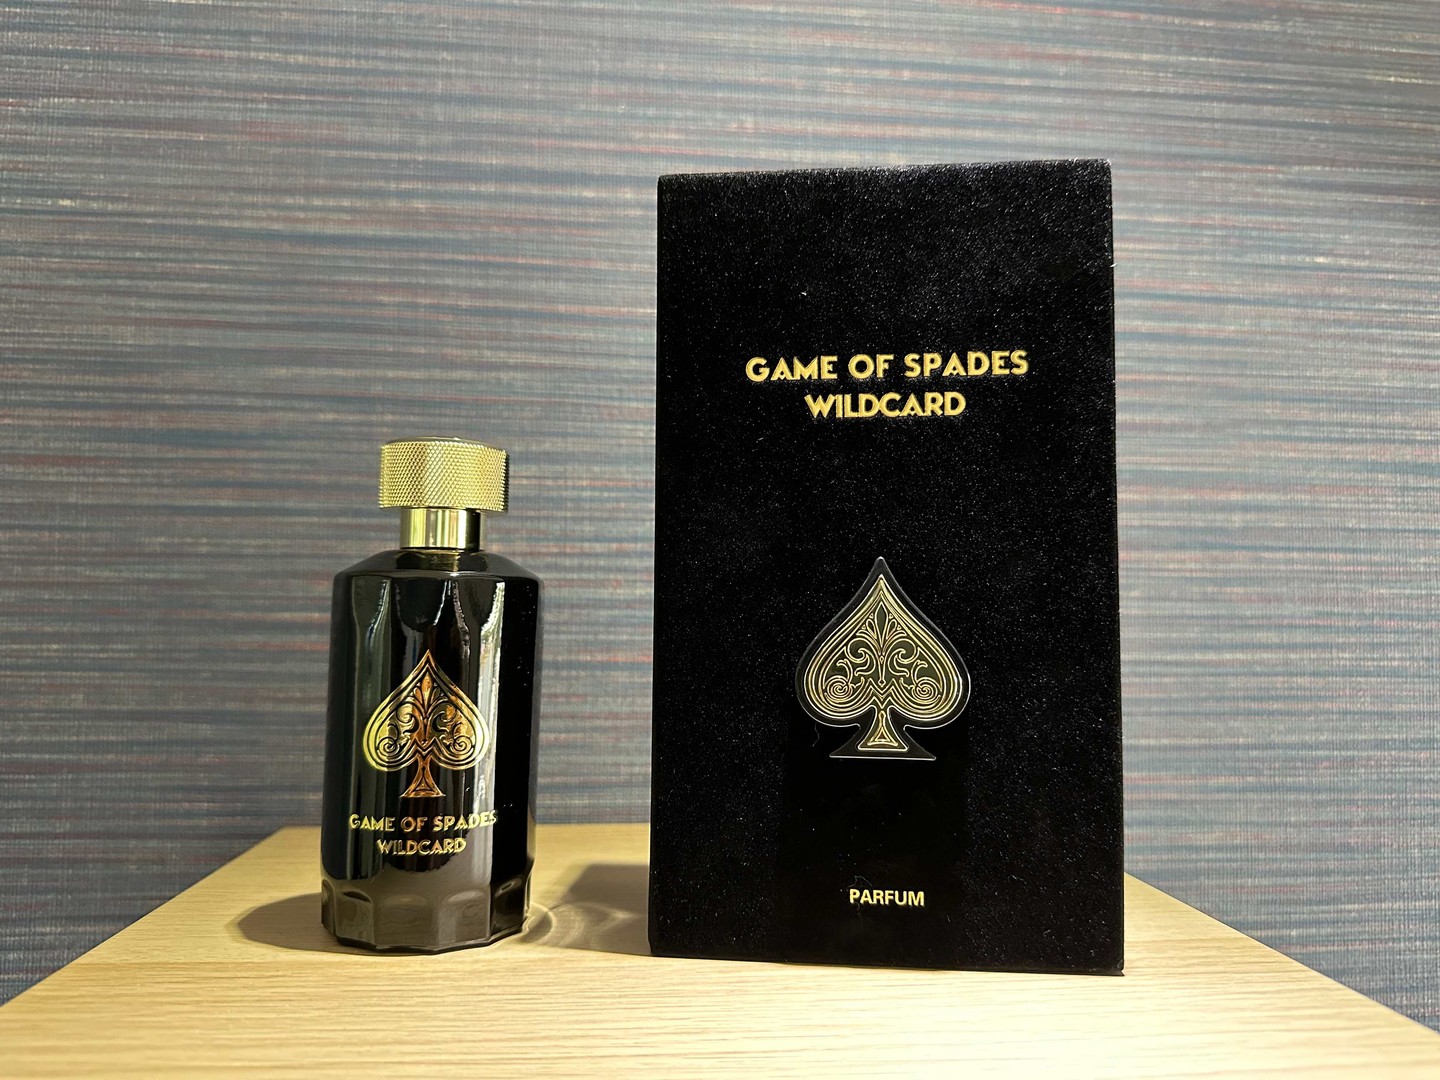 joyas, relojes y accesorios - Perfumes Jo Milano Paris Game of Spades Wildcard Nuevo 100ml RD$ 5,900 NEG 0